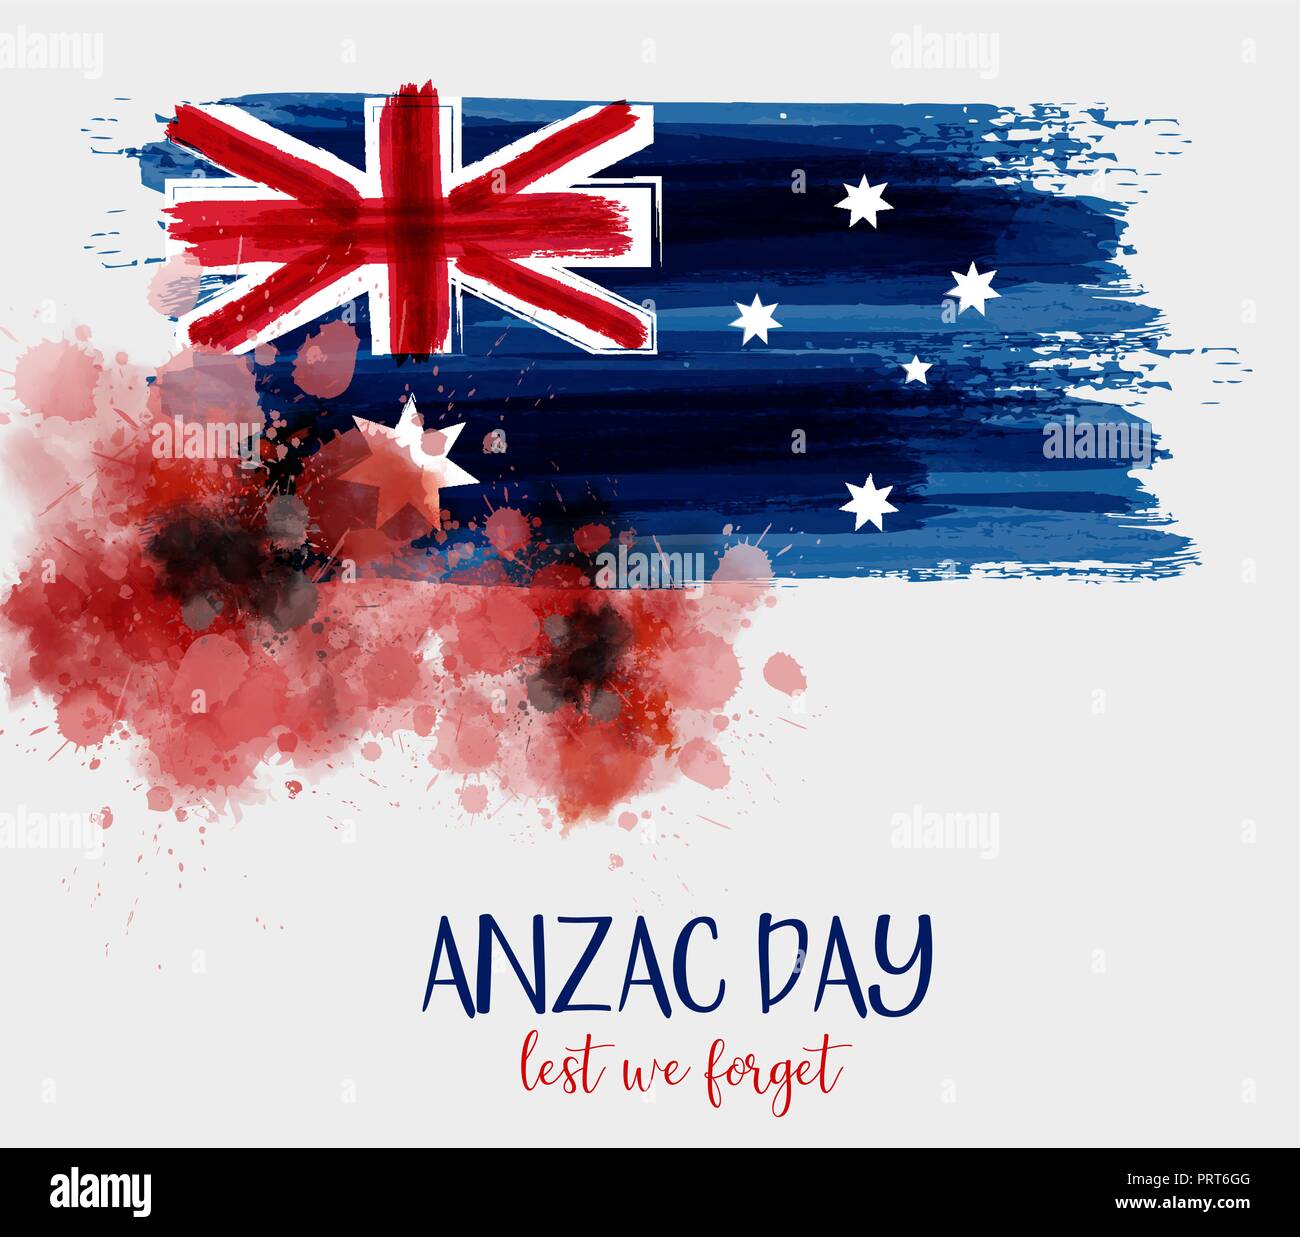 Kiêu hãnh và vinh quang là hai từ để miêu tả được lá cờ Úc, một biểu tượng quốc gia vĩ đại. Ngày Anzac là ngày để tôn vinh và tri ân cho những người lính Úc - New Zealand, đã hy sinh trong Thế chiến thứ nhất. Bức ảnh liên quan sẽ mang đến cho bạn cảm giác khích lệ và tự hào về sự đoàn kết và dũng cảm của quân nhân và dân tộc Úc.